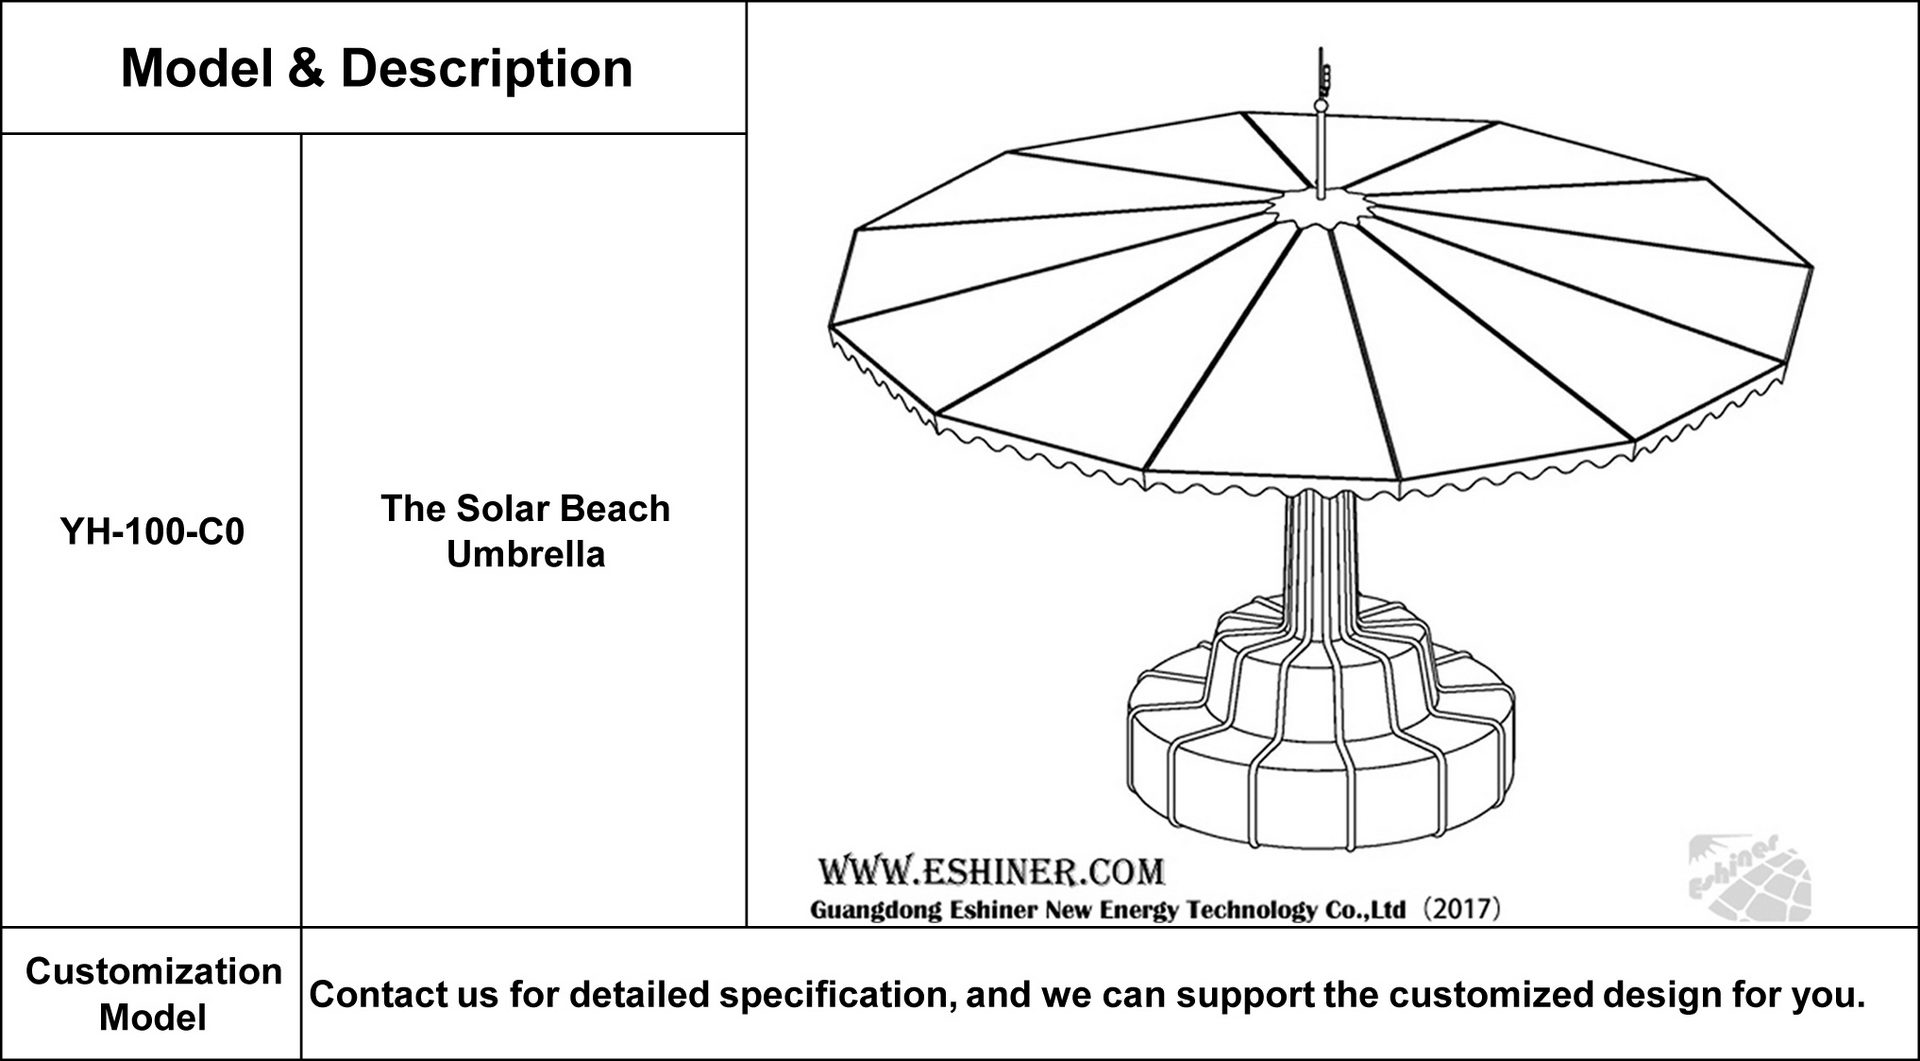 沙滩伞产品图片(英文).jpg